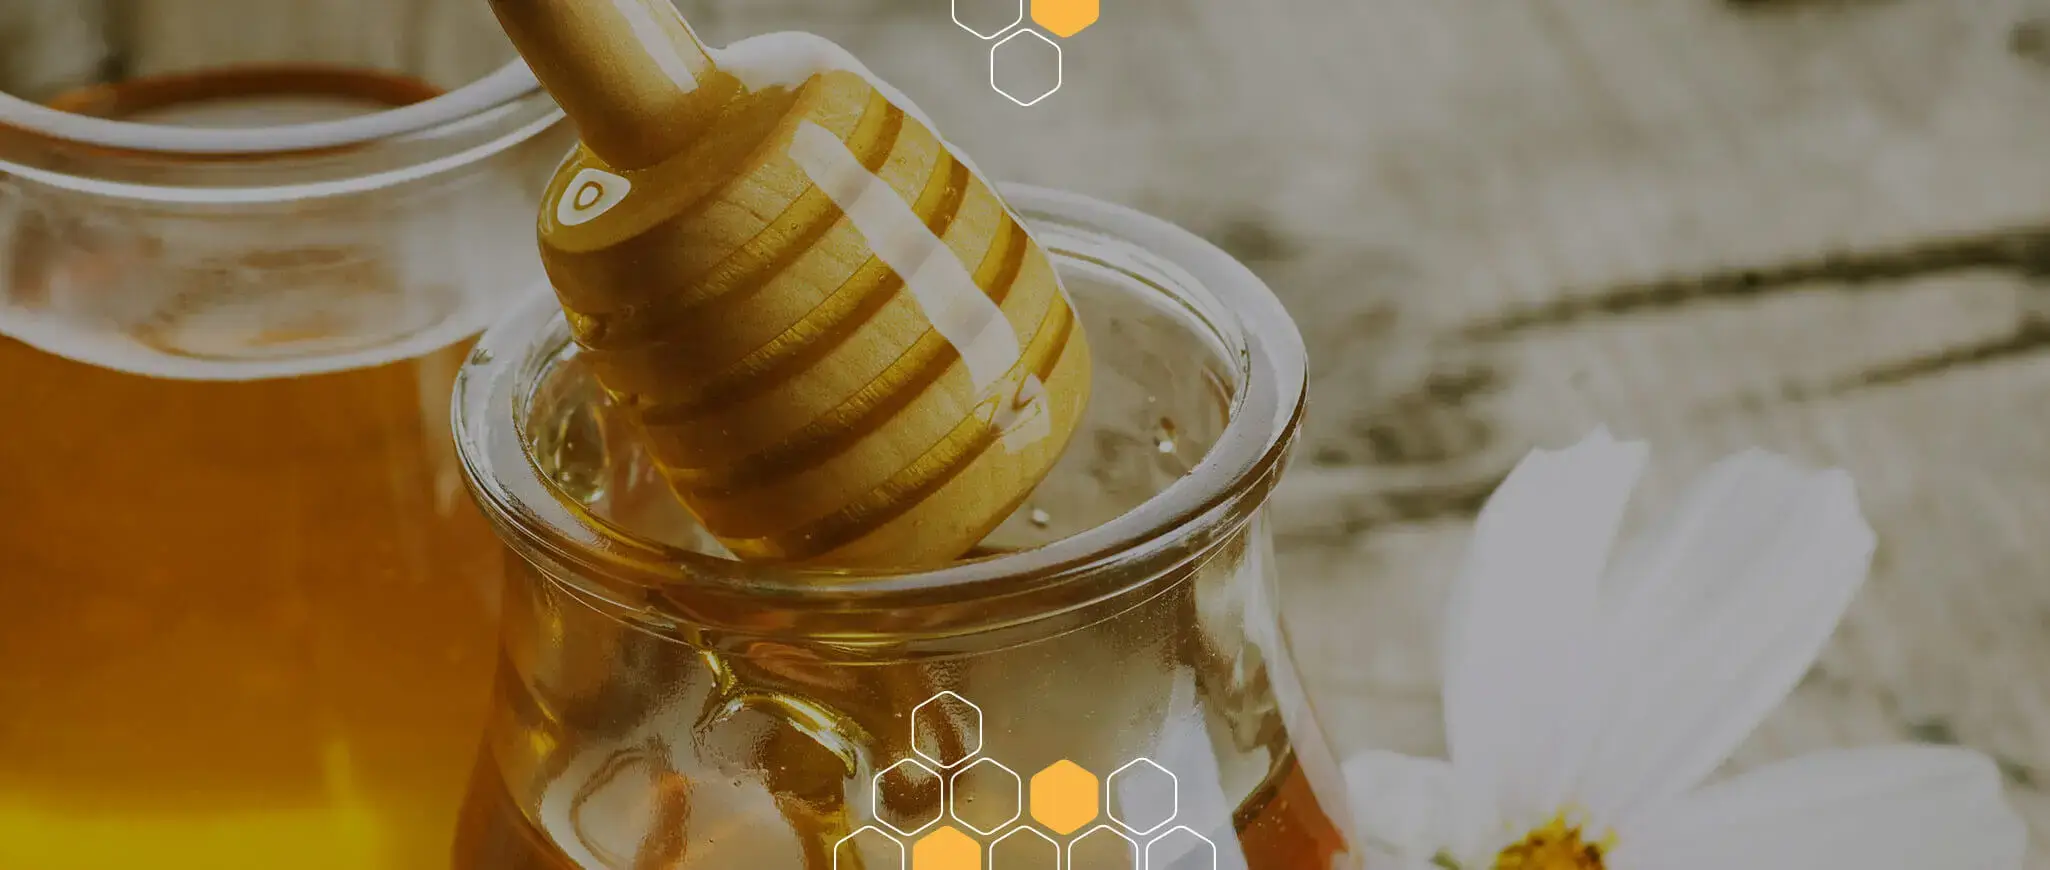 Снимка на екологично чист мед